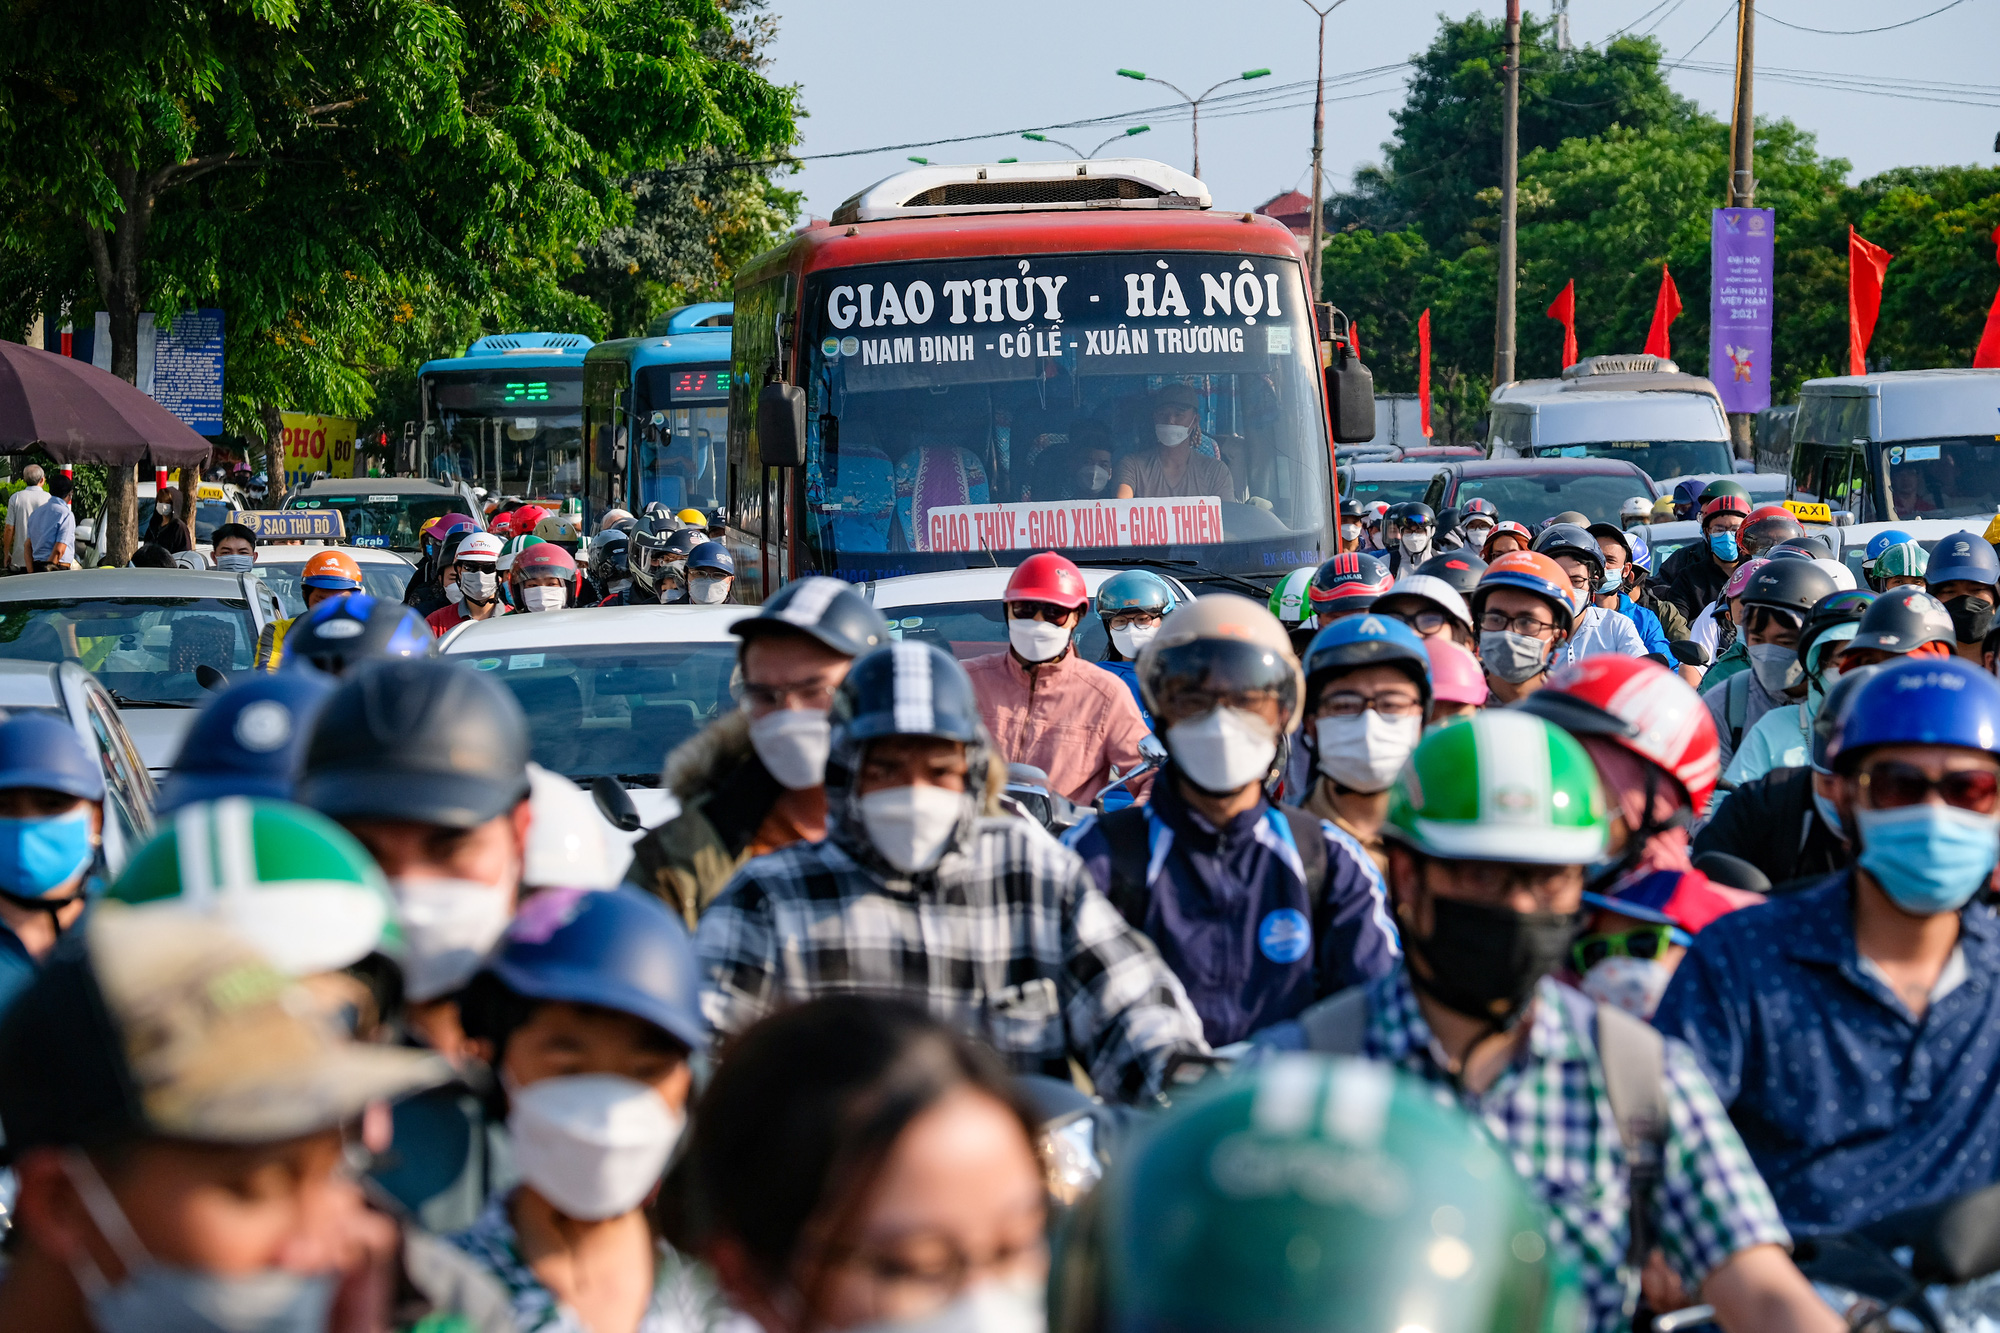 Người dân ùn ùn quay trở lại Hà Nội dù chưa kết thúc kỳ nghỉ lễ vì nỗi sợ tắc đường, giao thông khu vực cửa ngõ ùn ứ - Ảnh 2.